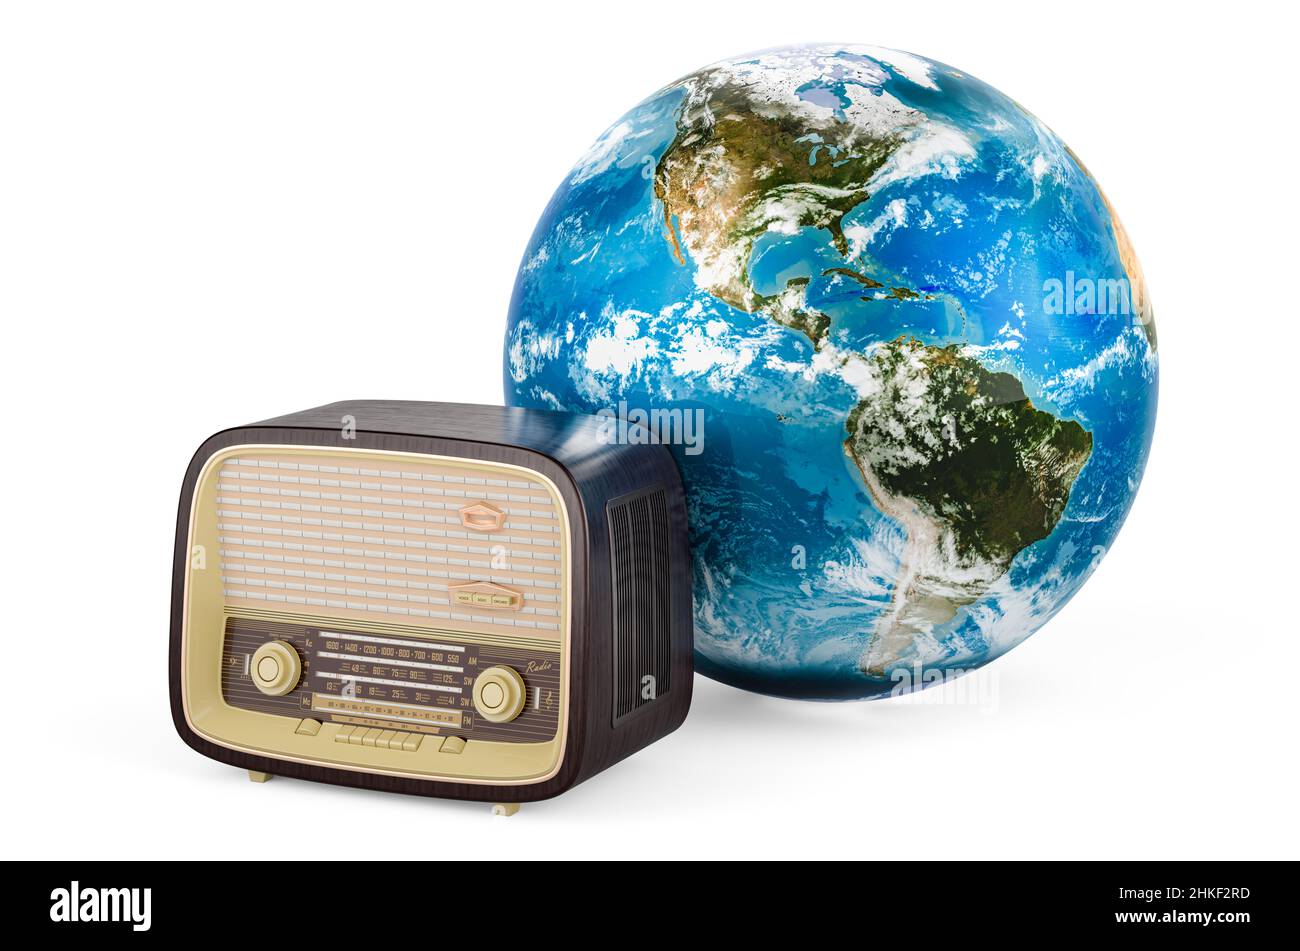 Ricevitore radio vintage con Earth Globe. Giornata mondiale della radio, concetto. 3D rendering isolato su sfondo bianco Foto Stock